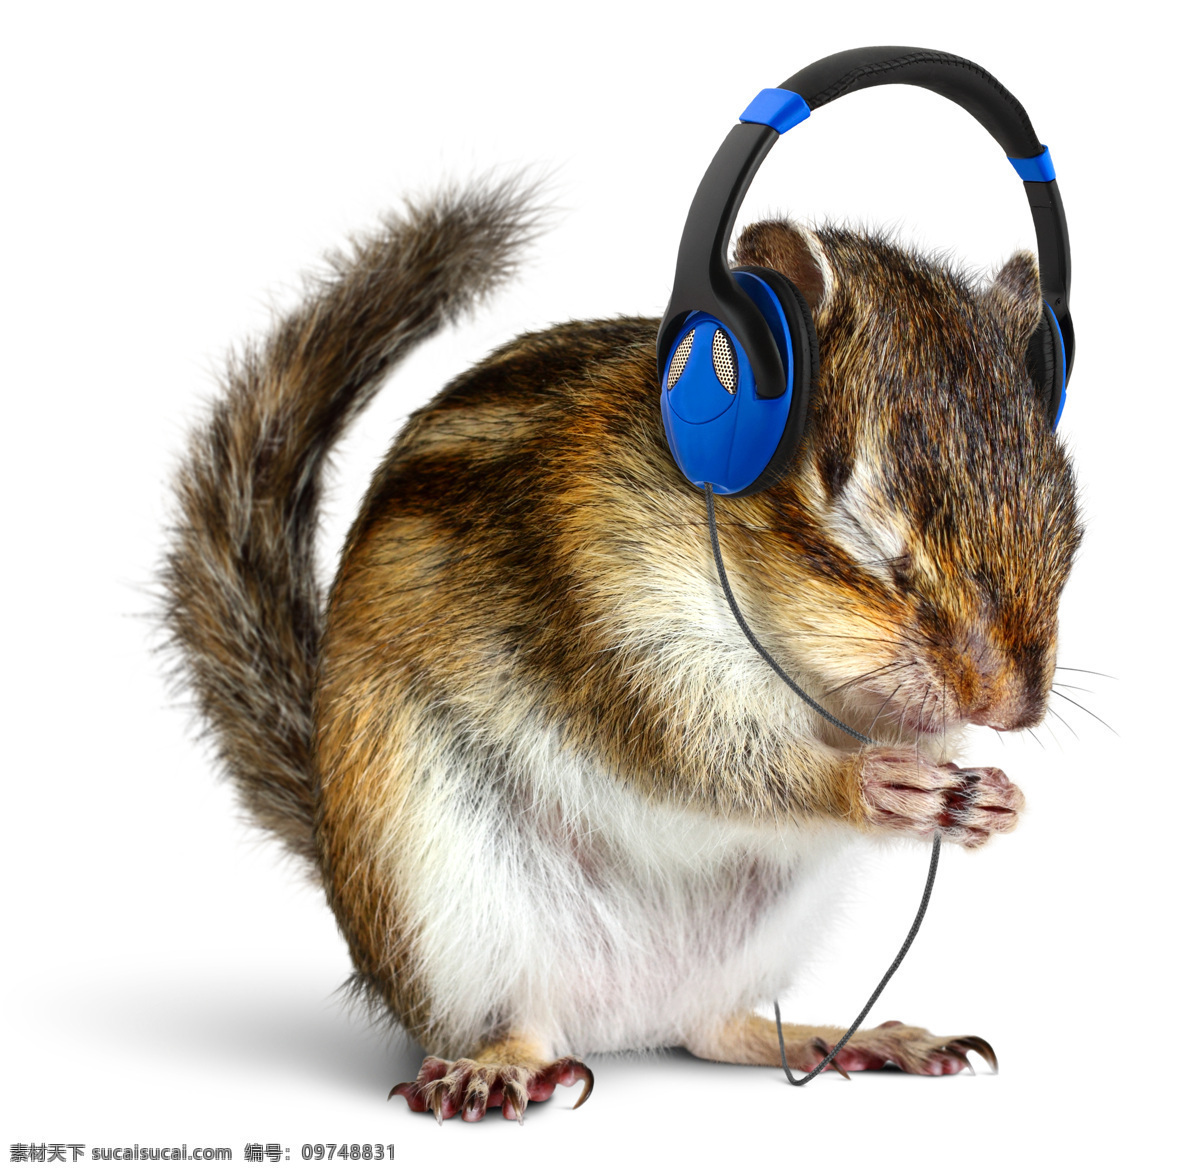 花栗鼠 戴耳机 小松鼠 松鼠 宠物 可爱 野生动物 生物世界